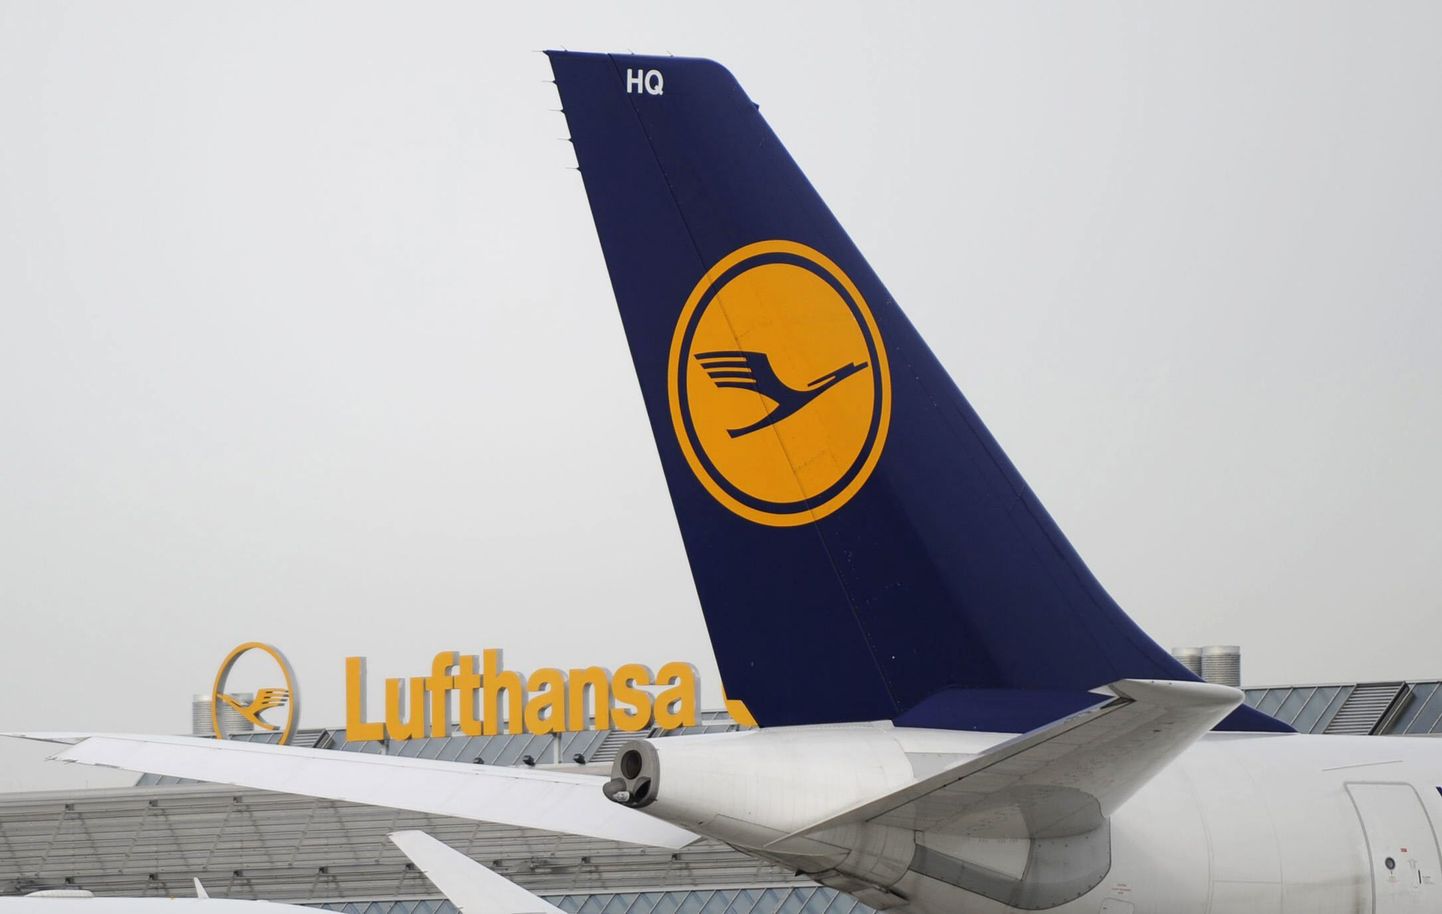 Из-за забастовки бортпроводников немецкой авиакомпании Lufthansa отменена примерно четверть рейсов из аэропорта Франкфурта-на-Майне.